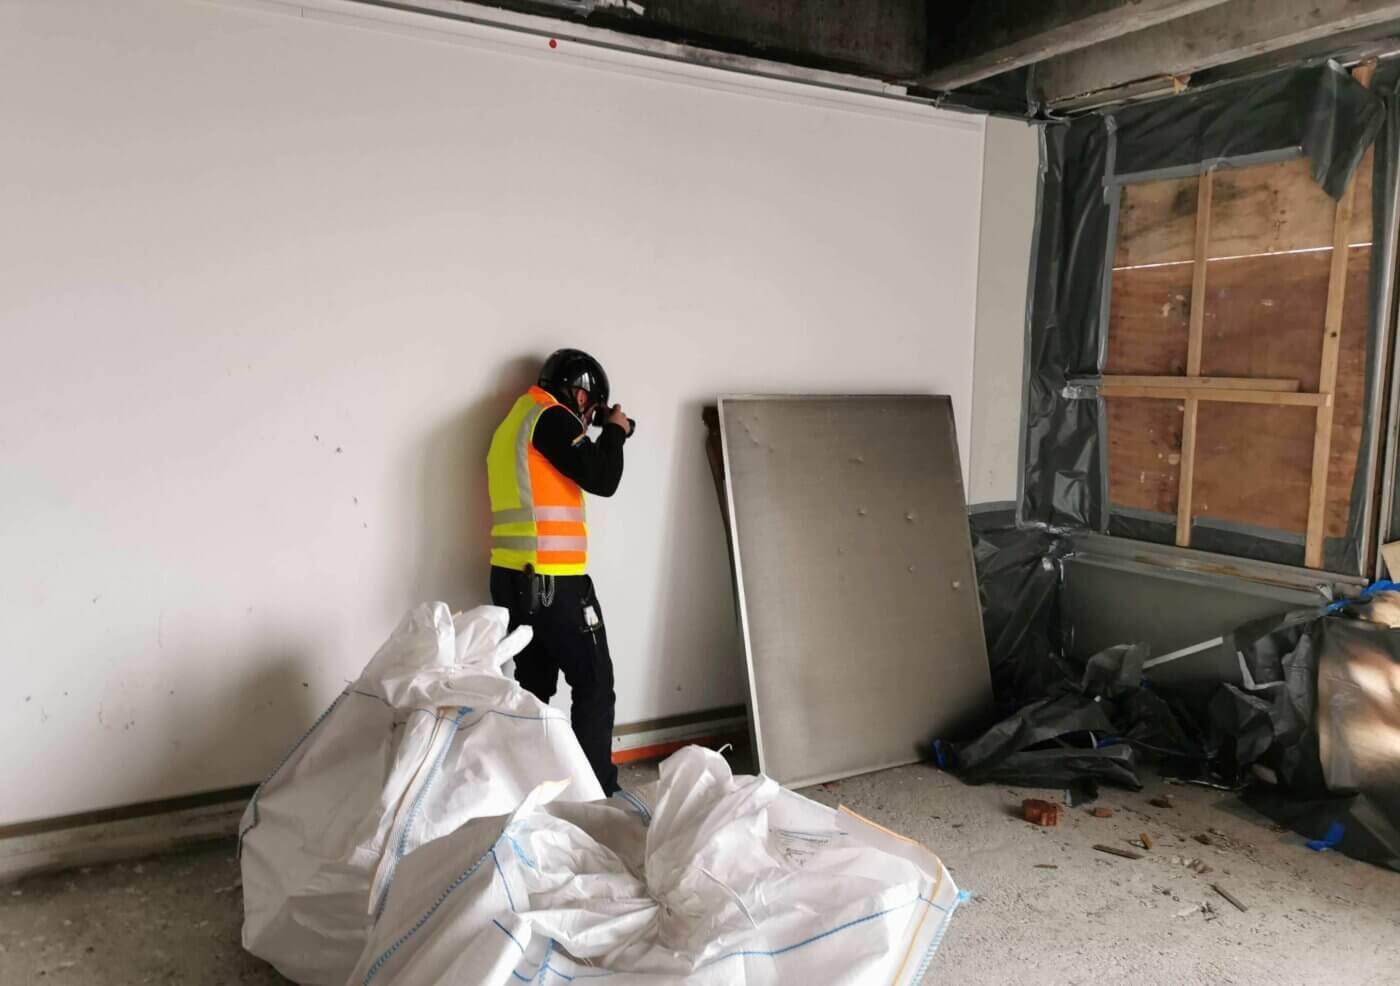 Ein Mann mit Sicherheitsweste und Helm fotografiert auf einer Baustelle in einem Raum mit vernageltem Fenster und Bauschutt.